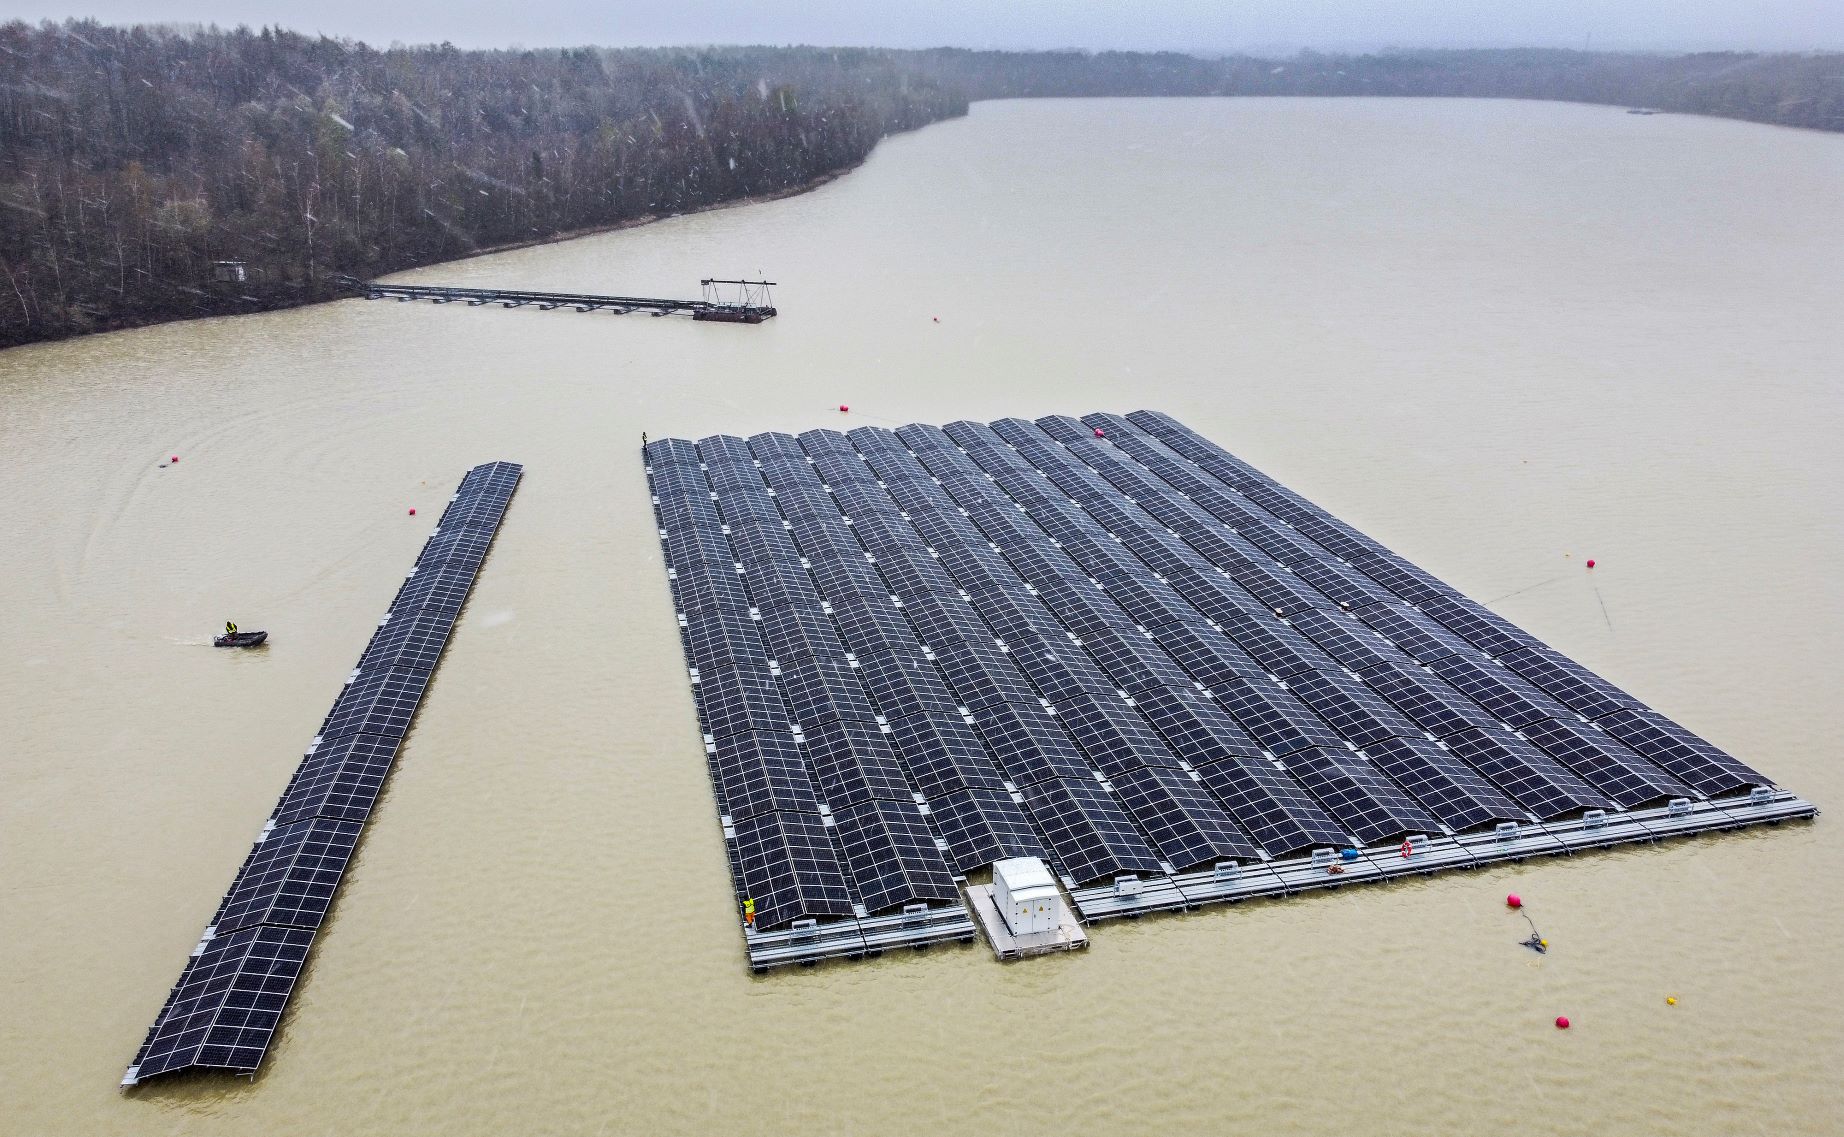 ألواح استخراج الكهرباء من الطاقة الشمسية وقد ثُبتت في منصة عائمة فوق مياه بحيرة "هالتيرن" في ألمانيا، بتاريخ 01 إبريل 2022 